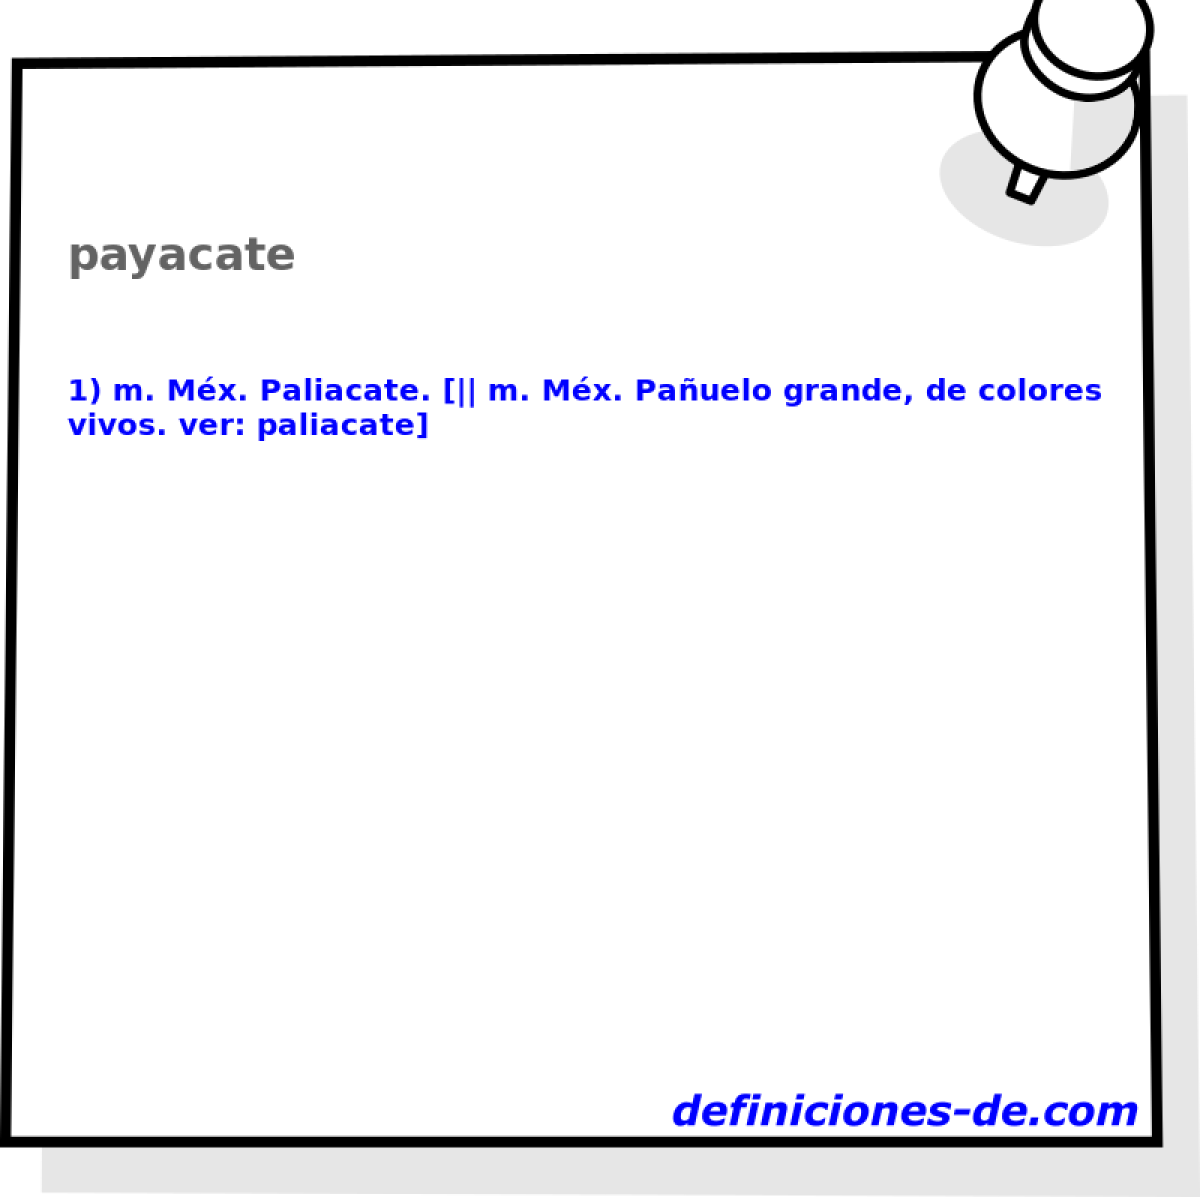 payacate 